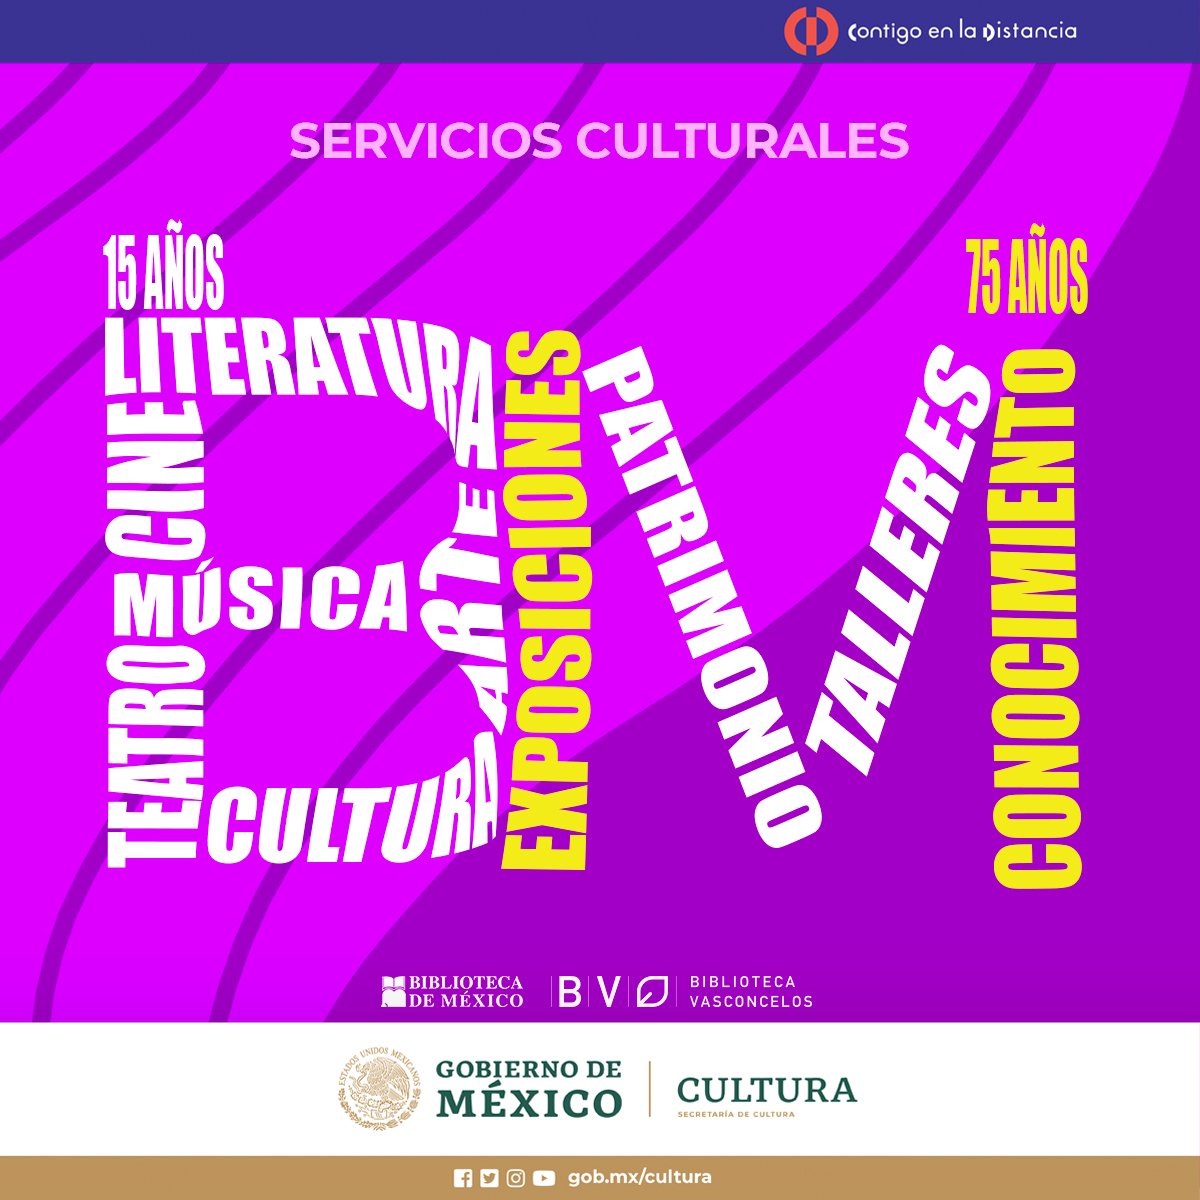 Bibliotecas de México y Vasconcelos celebran sus aniversarios con actividades